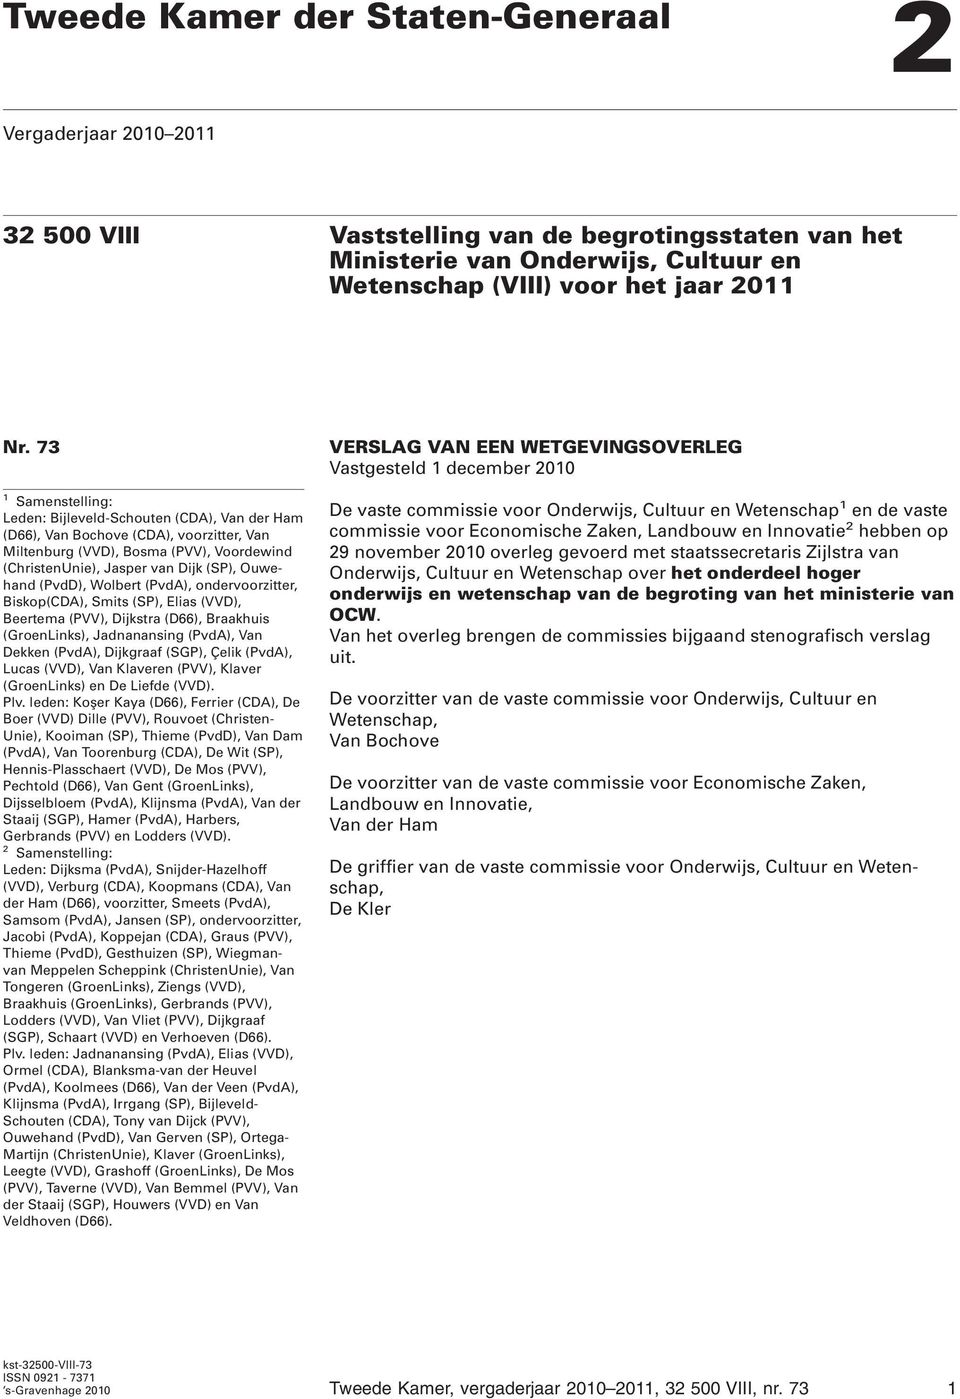 (PvdD), Wolbert (PvdA), ondervoorzitter, Biskop(CDA), Smits (SP), Elias (VVD), Beertema (PVV), Dijkstra (D66), Braakhuis (GroenLinks), Jadnanansing (PvdA), Van Dekken (PvdA), Dijkgraaf (SGP), Çelik